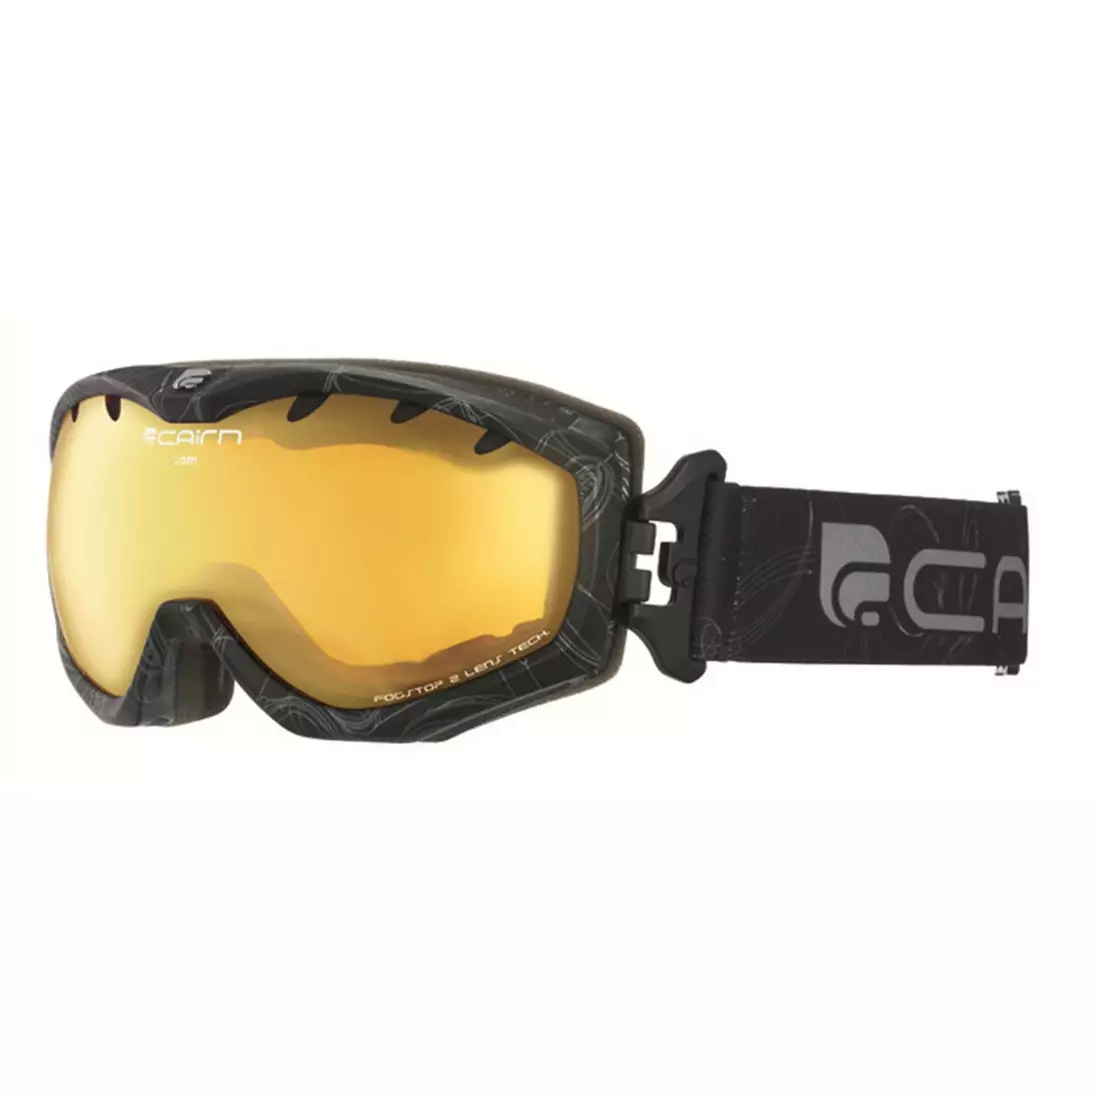 CAIRN lyžiarske/snowboardové okuliare JAM SPX1000 6966, black/orange, 5805776966